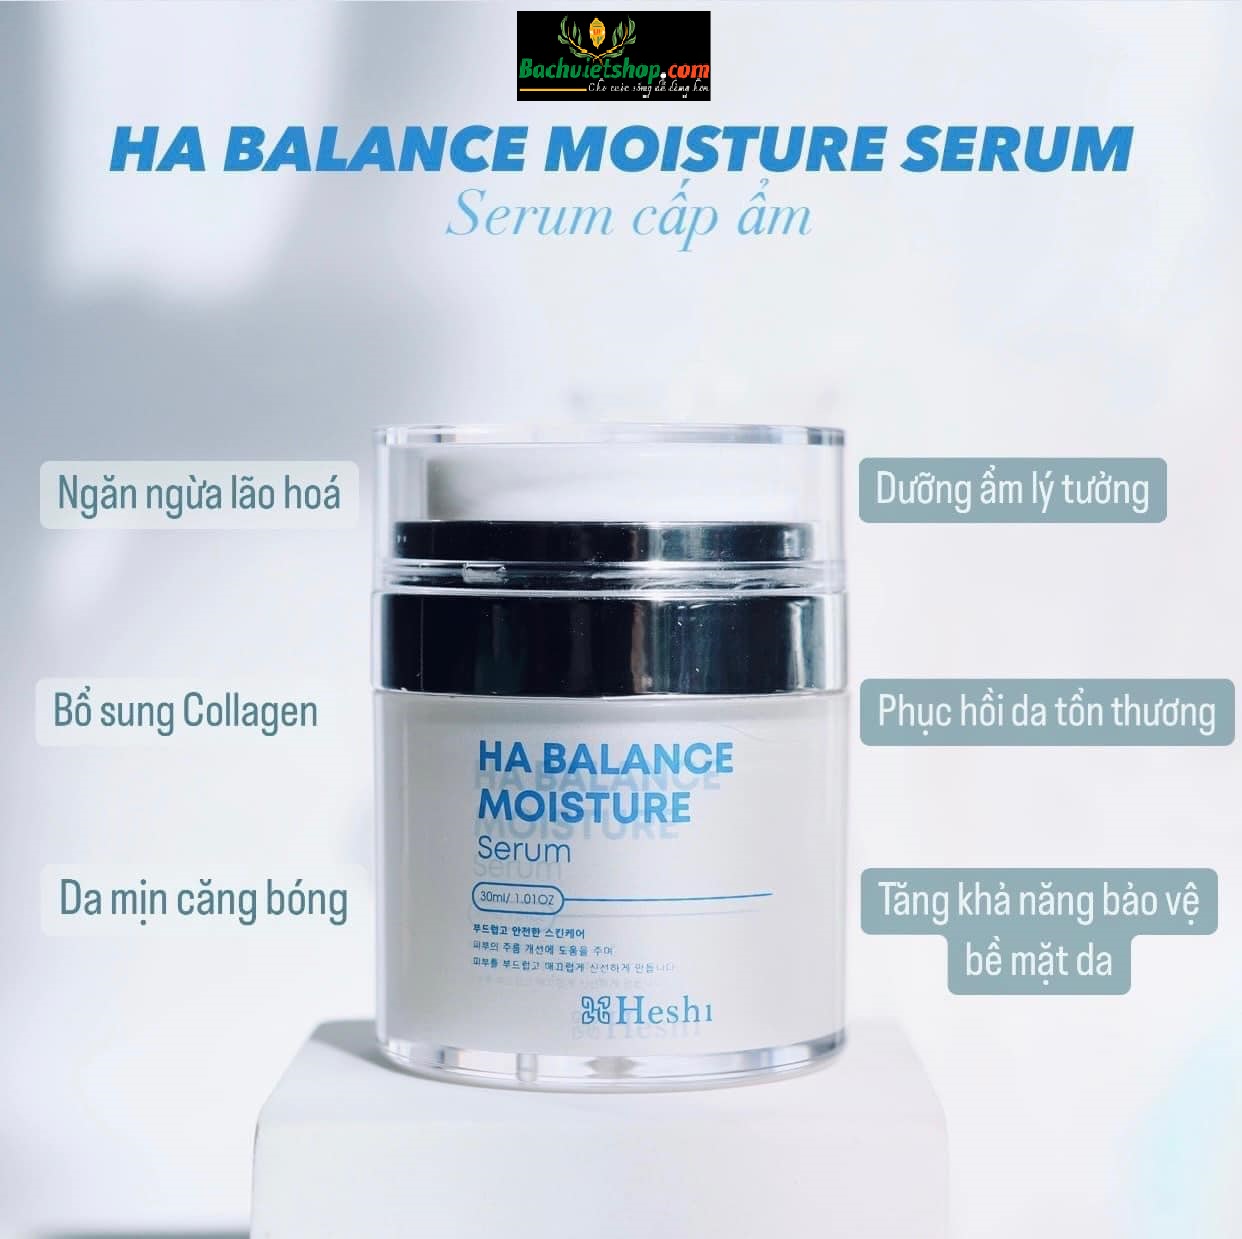 Serum dưỡng da HA Heshi dưỡng ẩm phục hồi đặc biệt hiệu quả cho làn da khô. Cảm nhận làn da mướt, mịn, khỏe mạnh sáng hồng ngay sau 1 lần sử dụng!